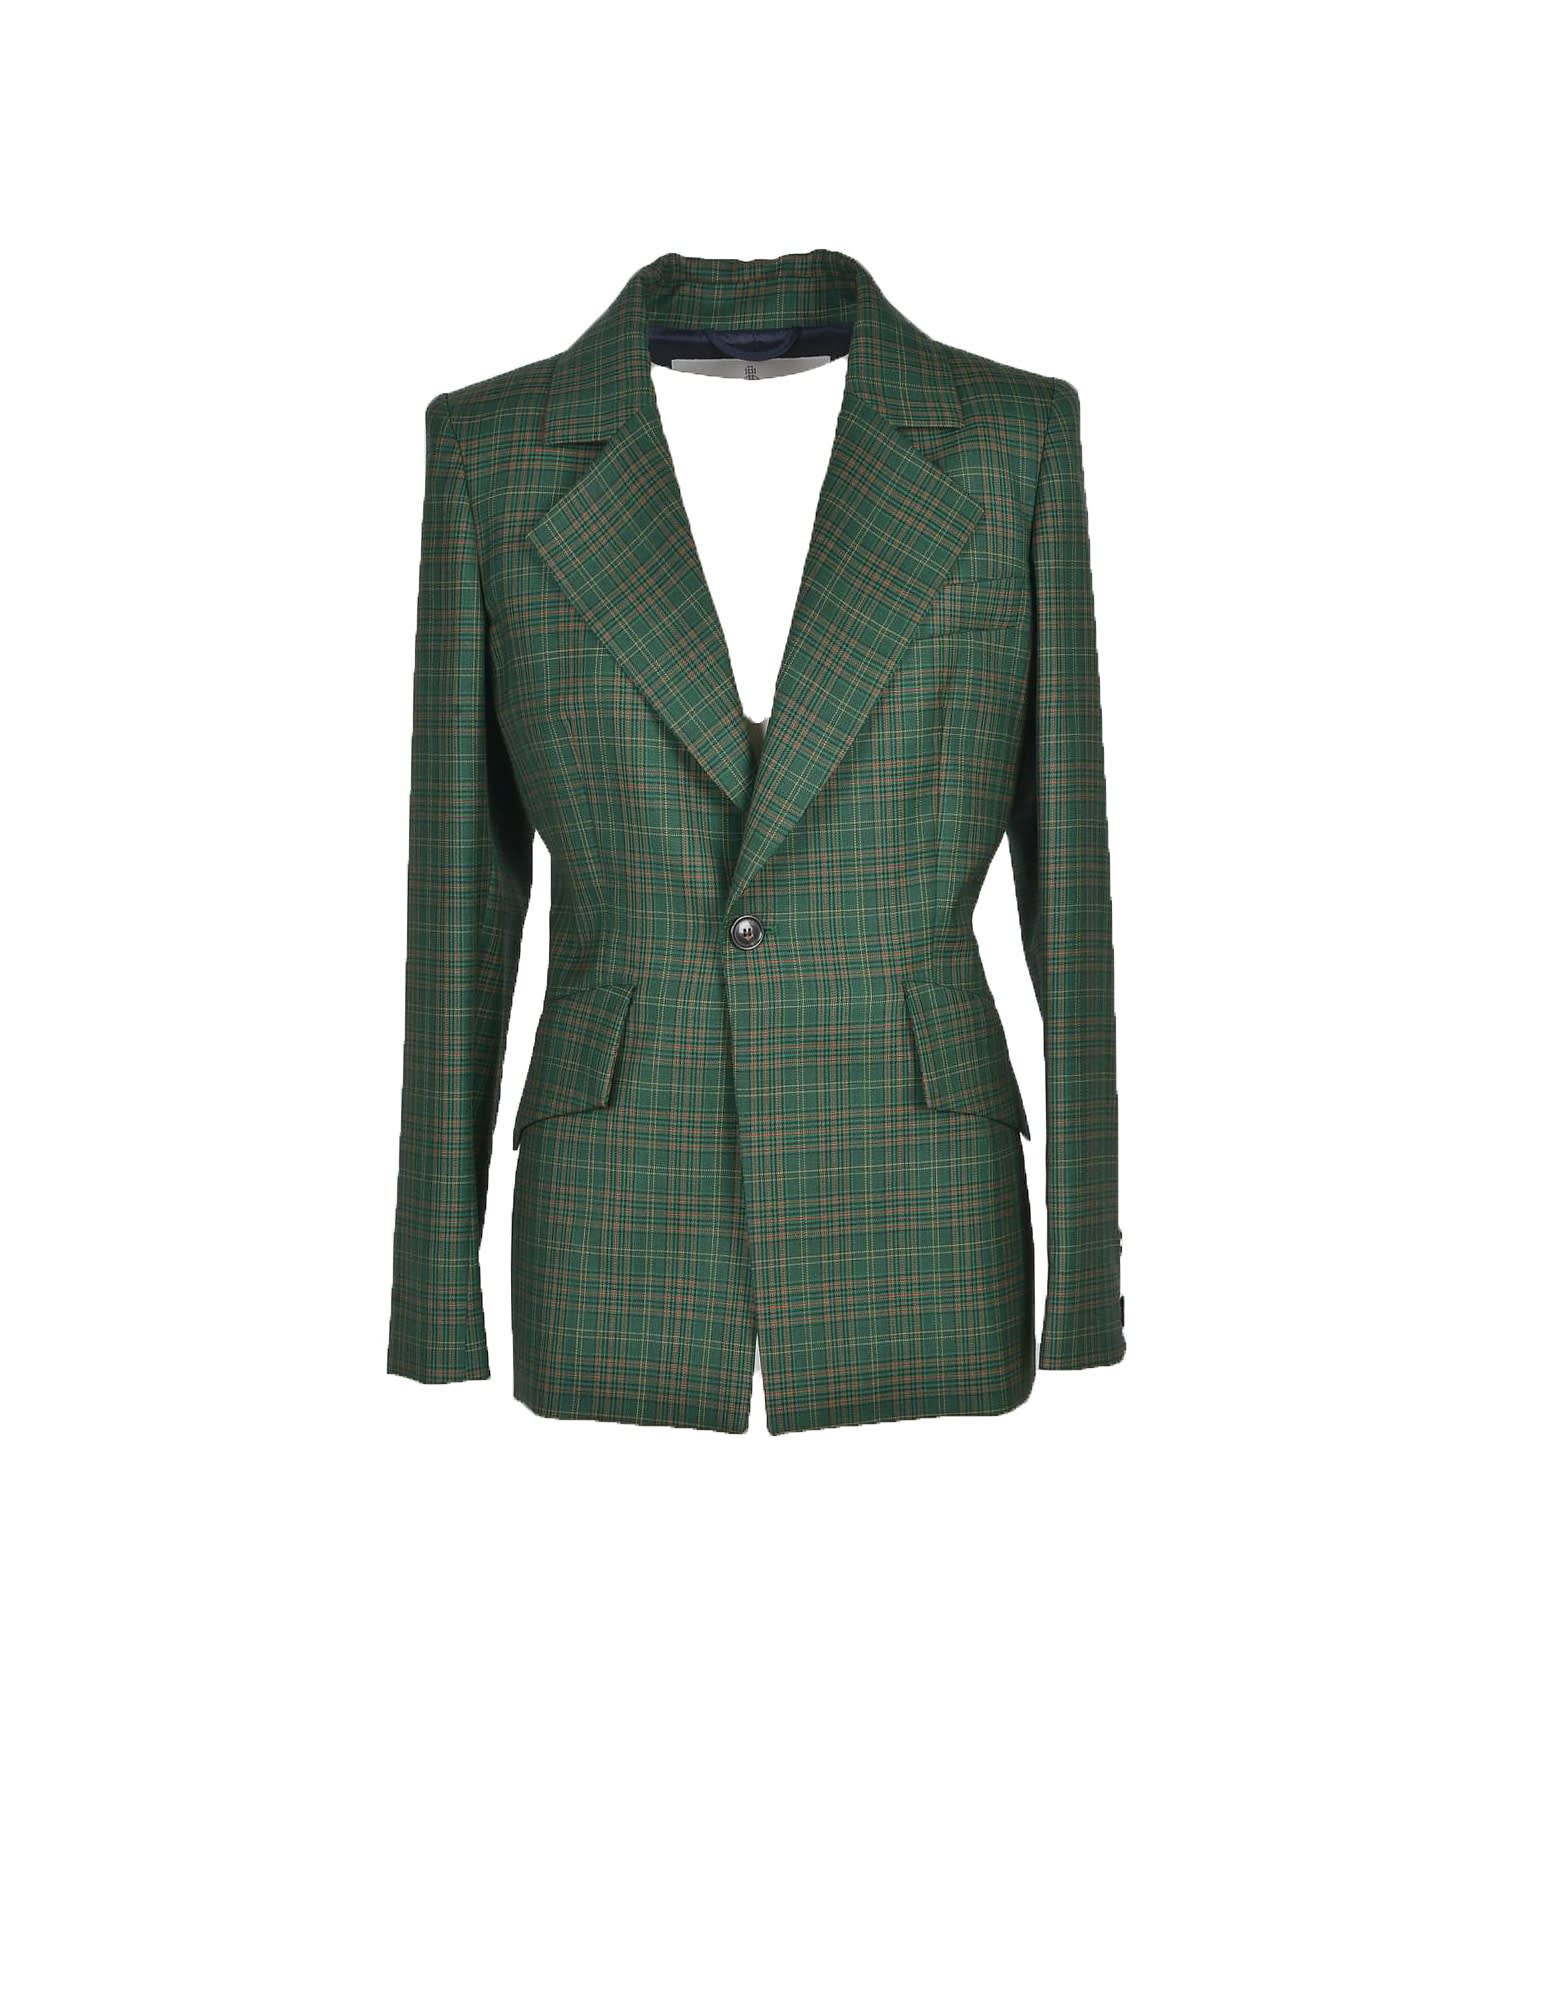 Vivienne Westwood Womens Green Blazer